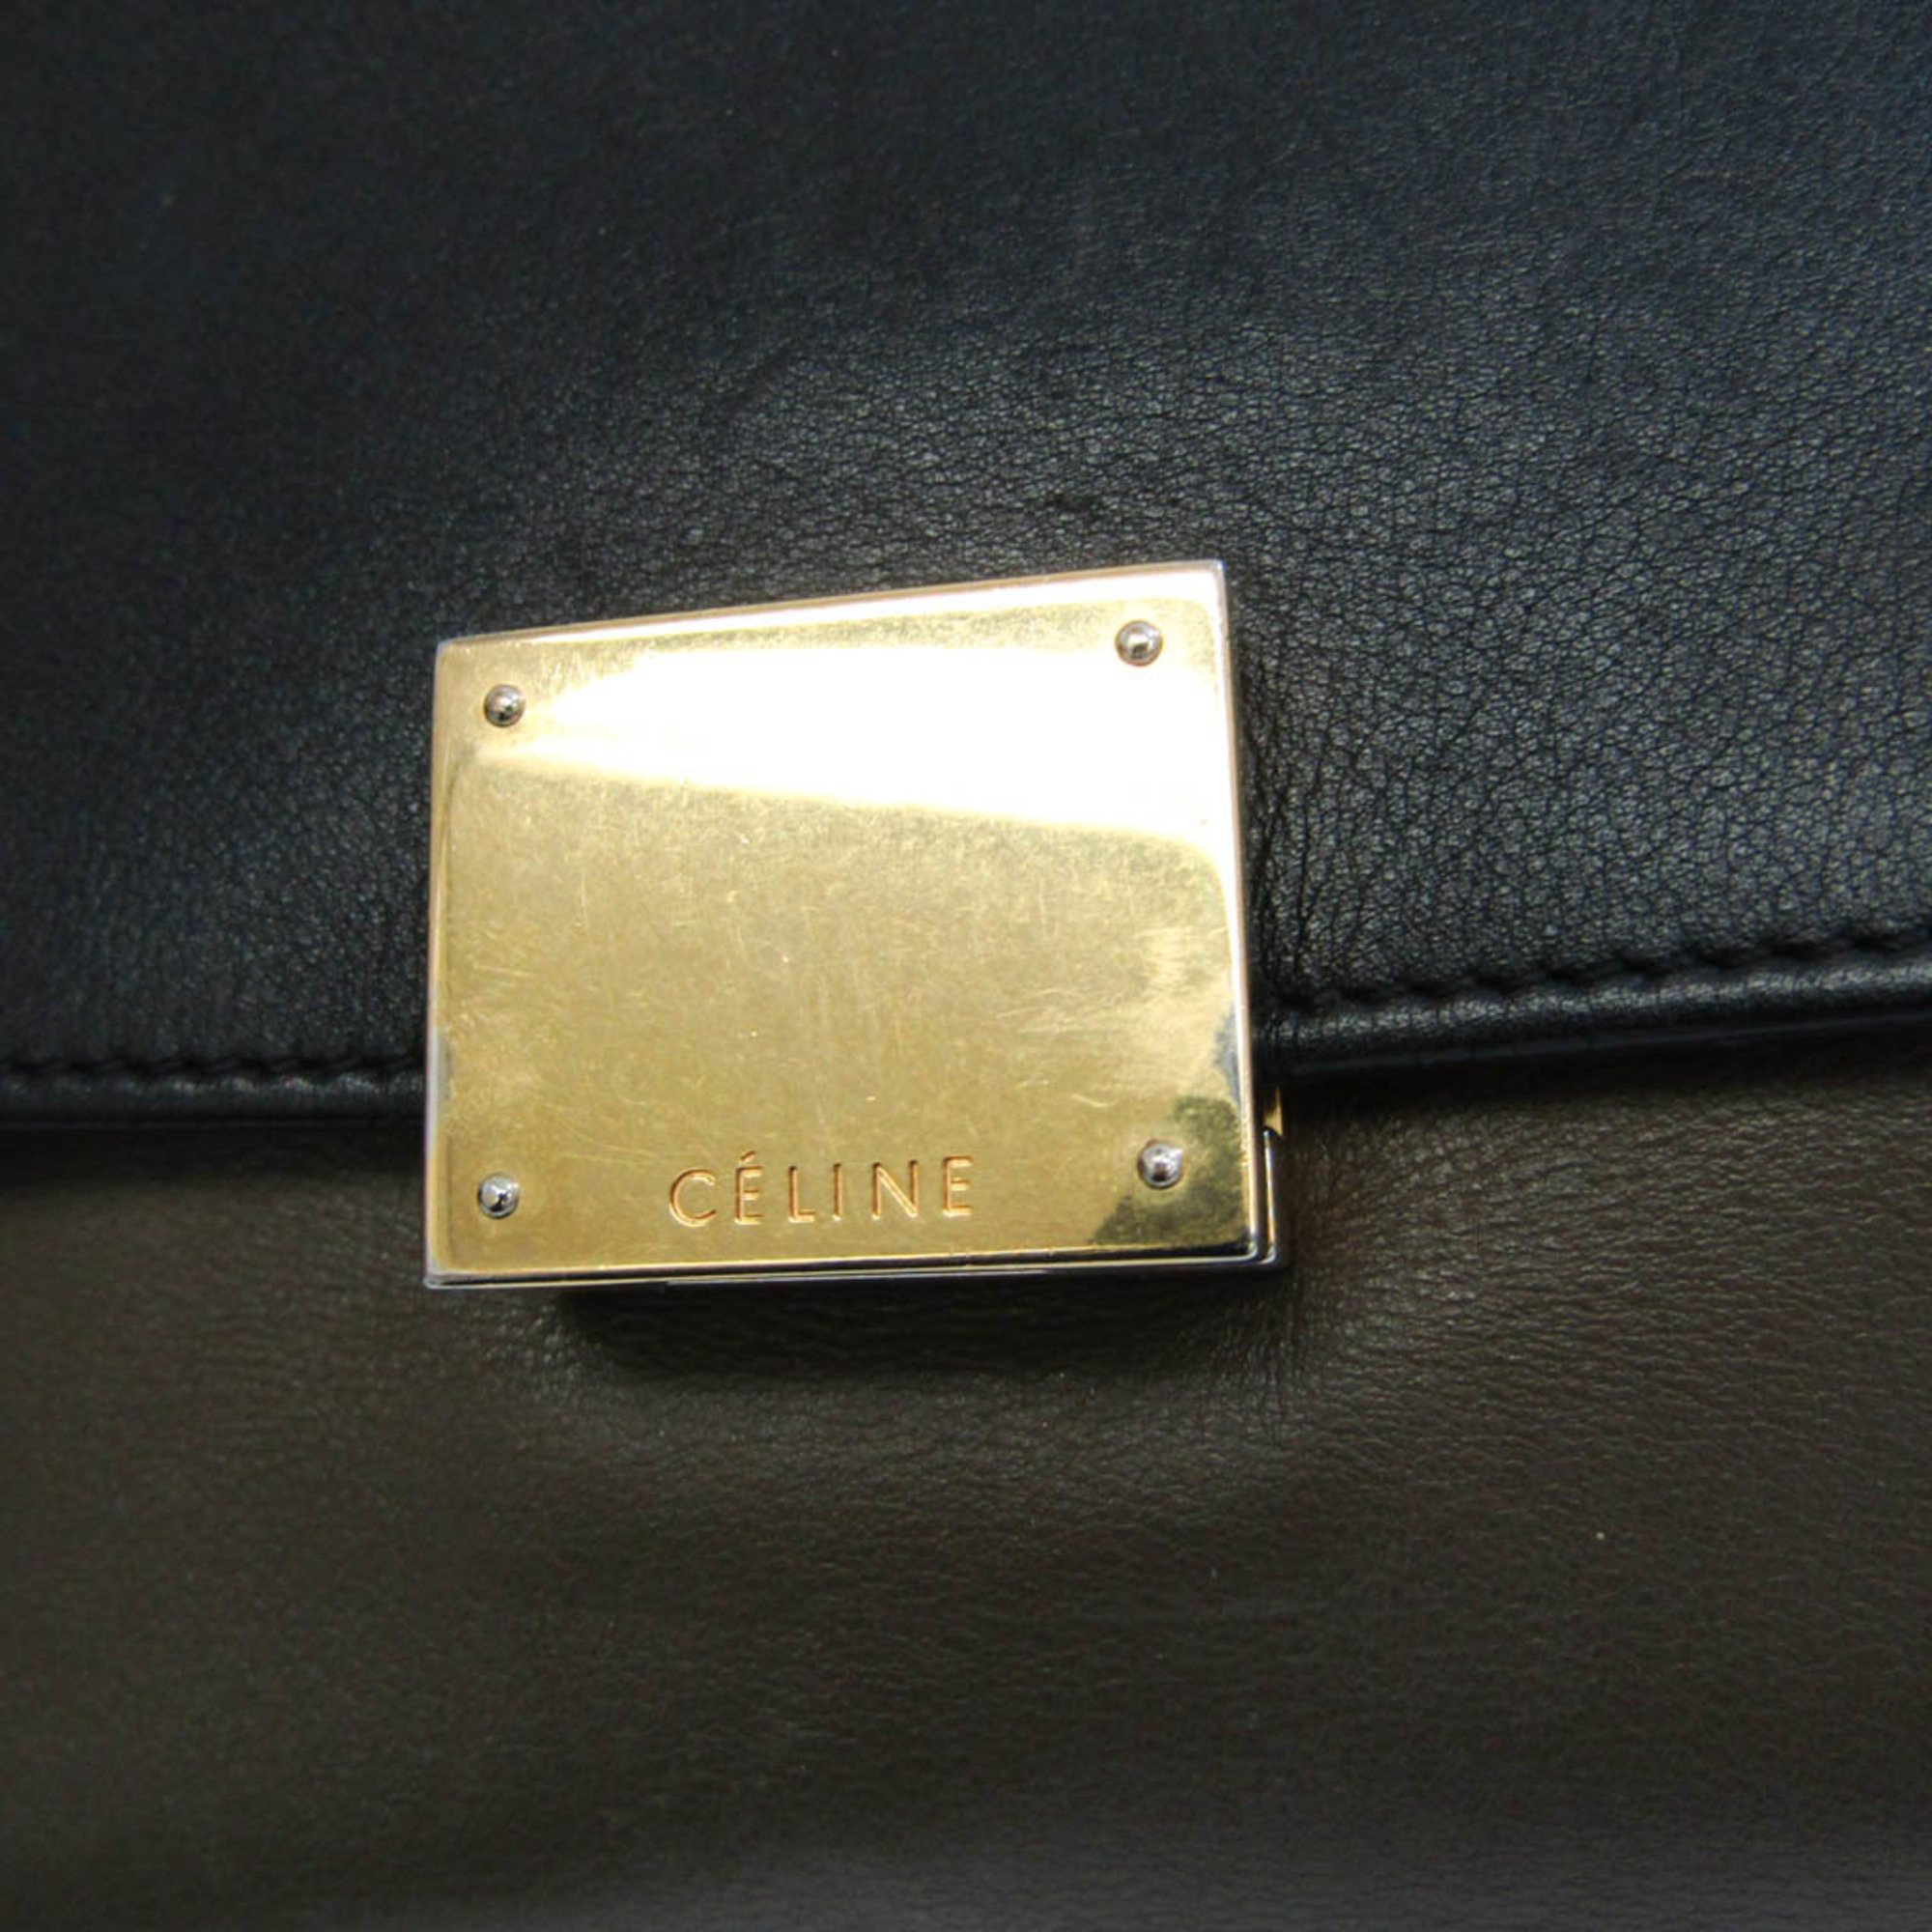 Celine Trapeze Women's Leather,Suede Handbag,Shoulder Bag Black,Grayish,Red Color